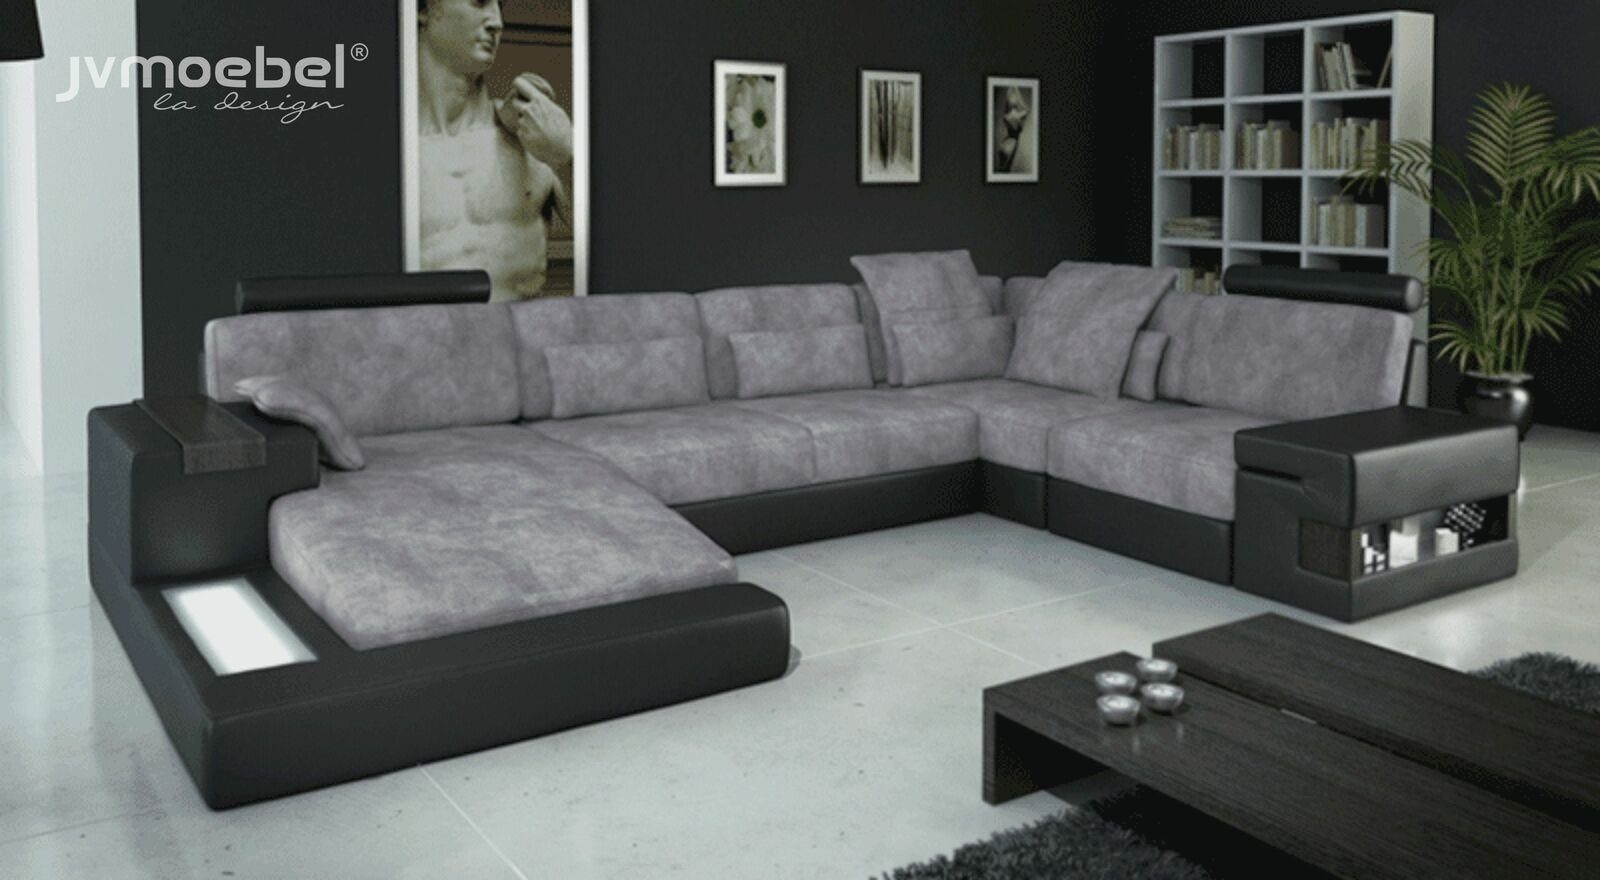 JVmoebel Ecksofa, Designer Moderne Luxus Textil Sofa U-Form Möbel mit Bett Funktionen